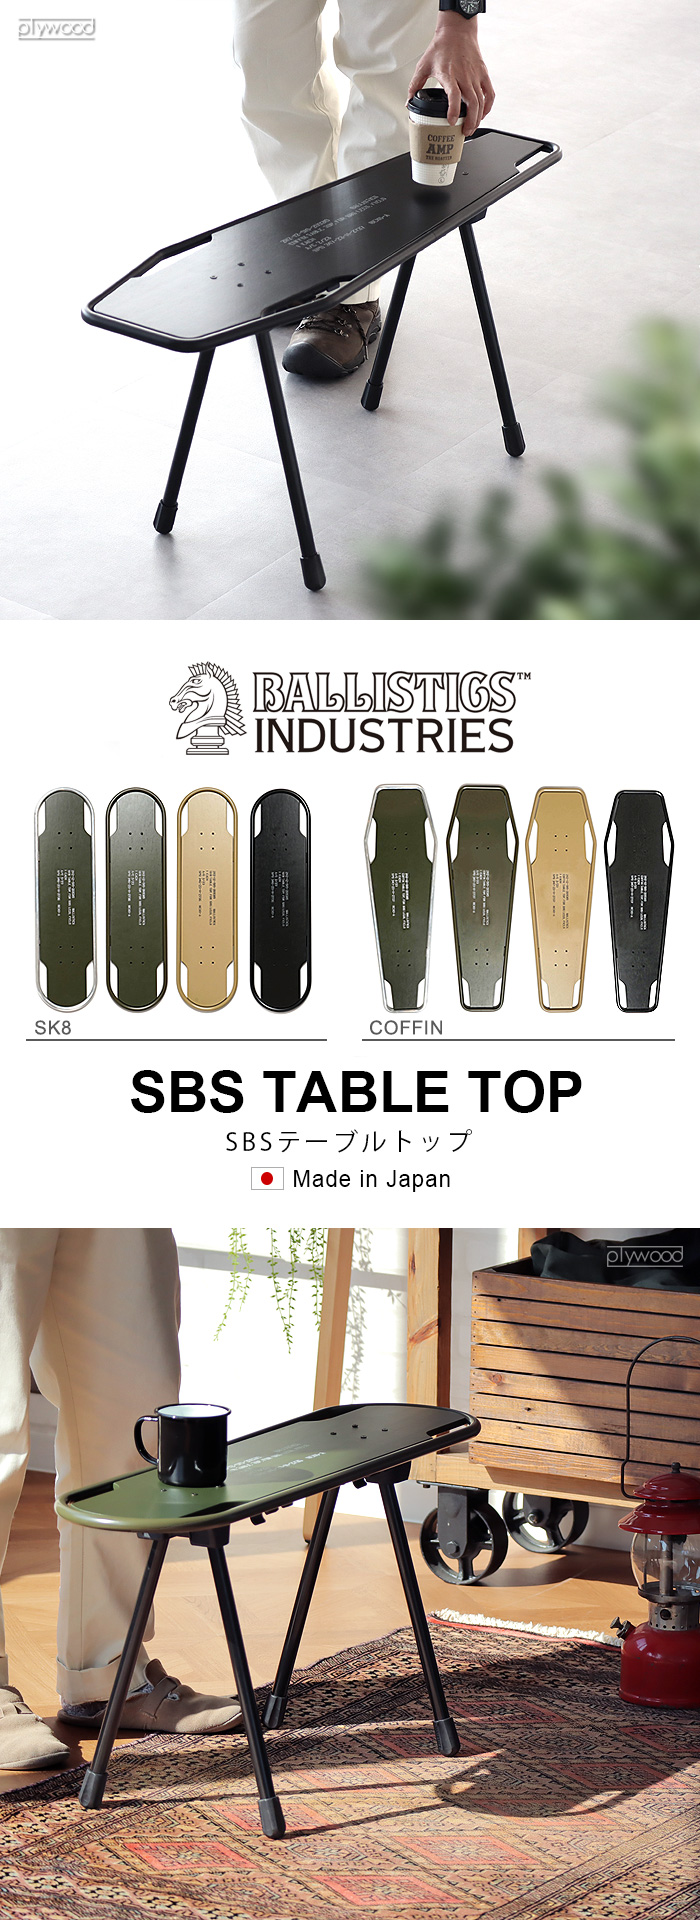 スツール テーブル 椅子 机 バリスティクス SBS KIT用 天板 スケートボード型 BALLISTICS SBS TABLE TOP SK8  BAA-2309 [脚別売り]